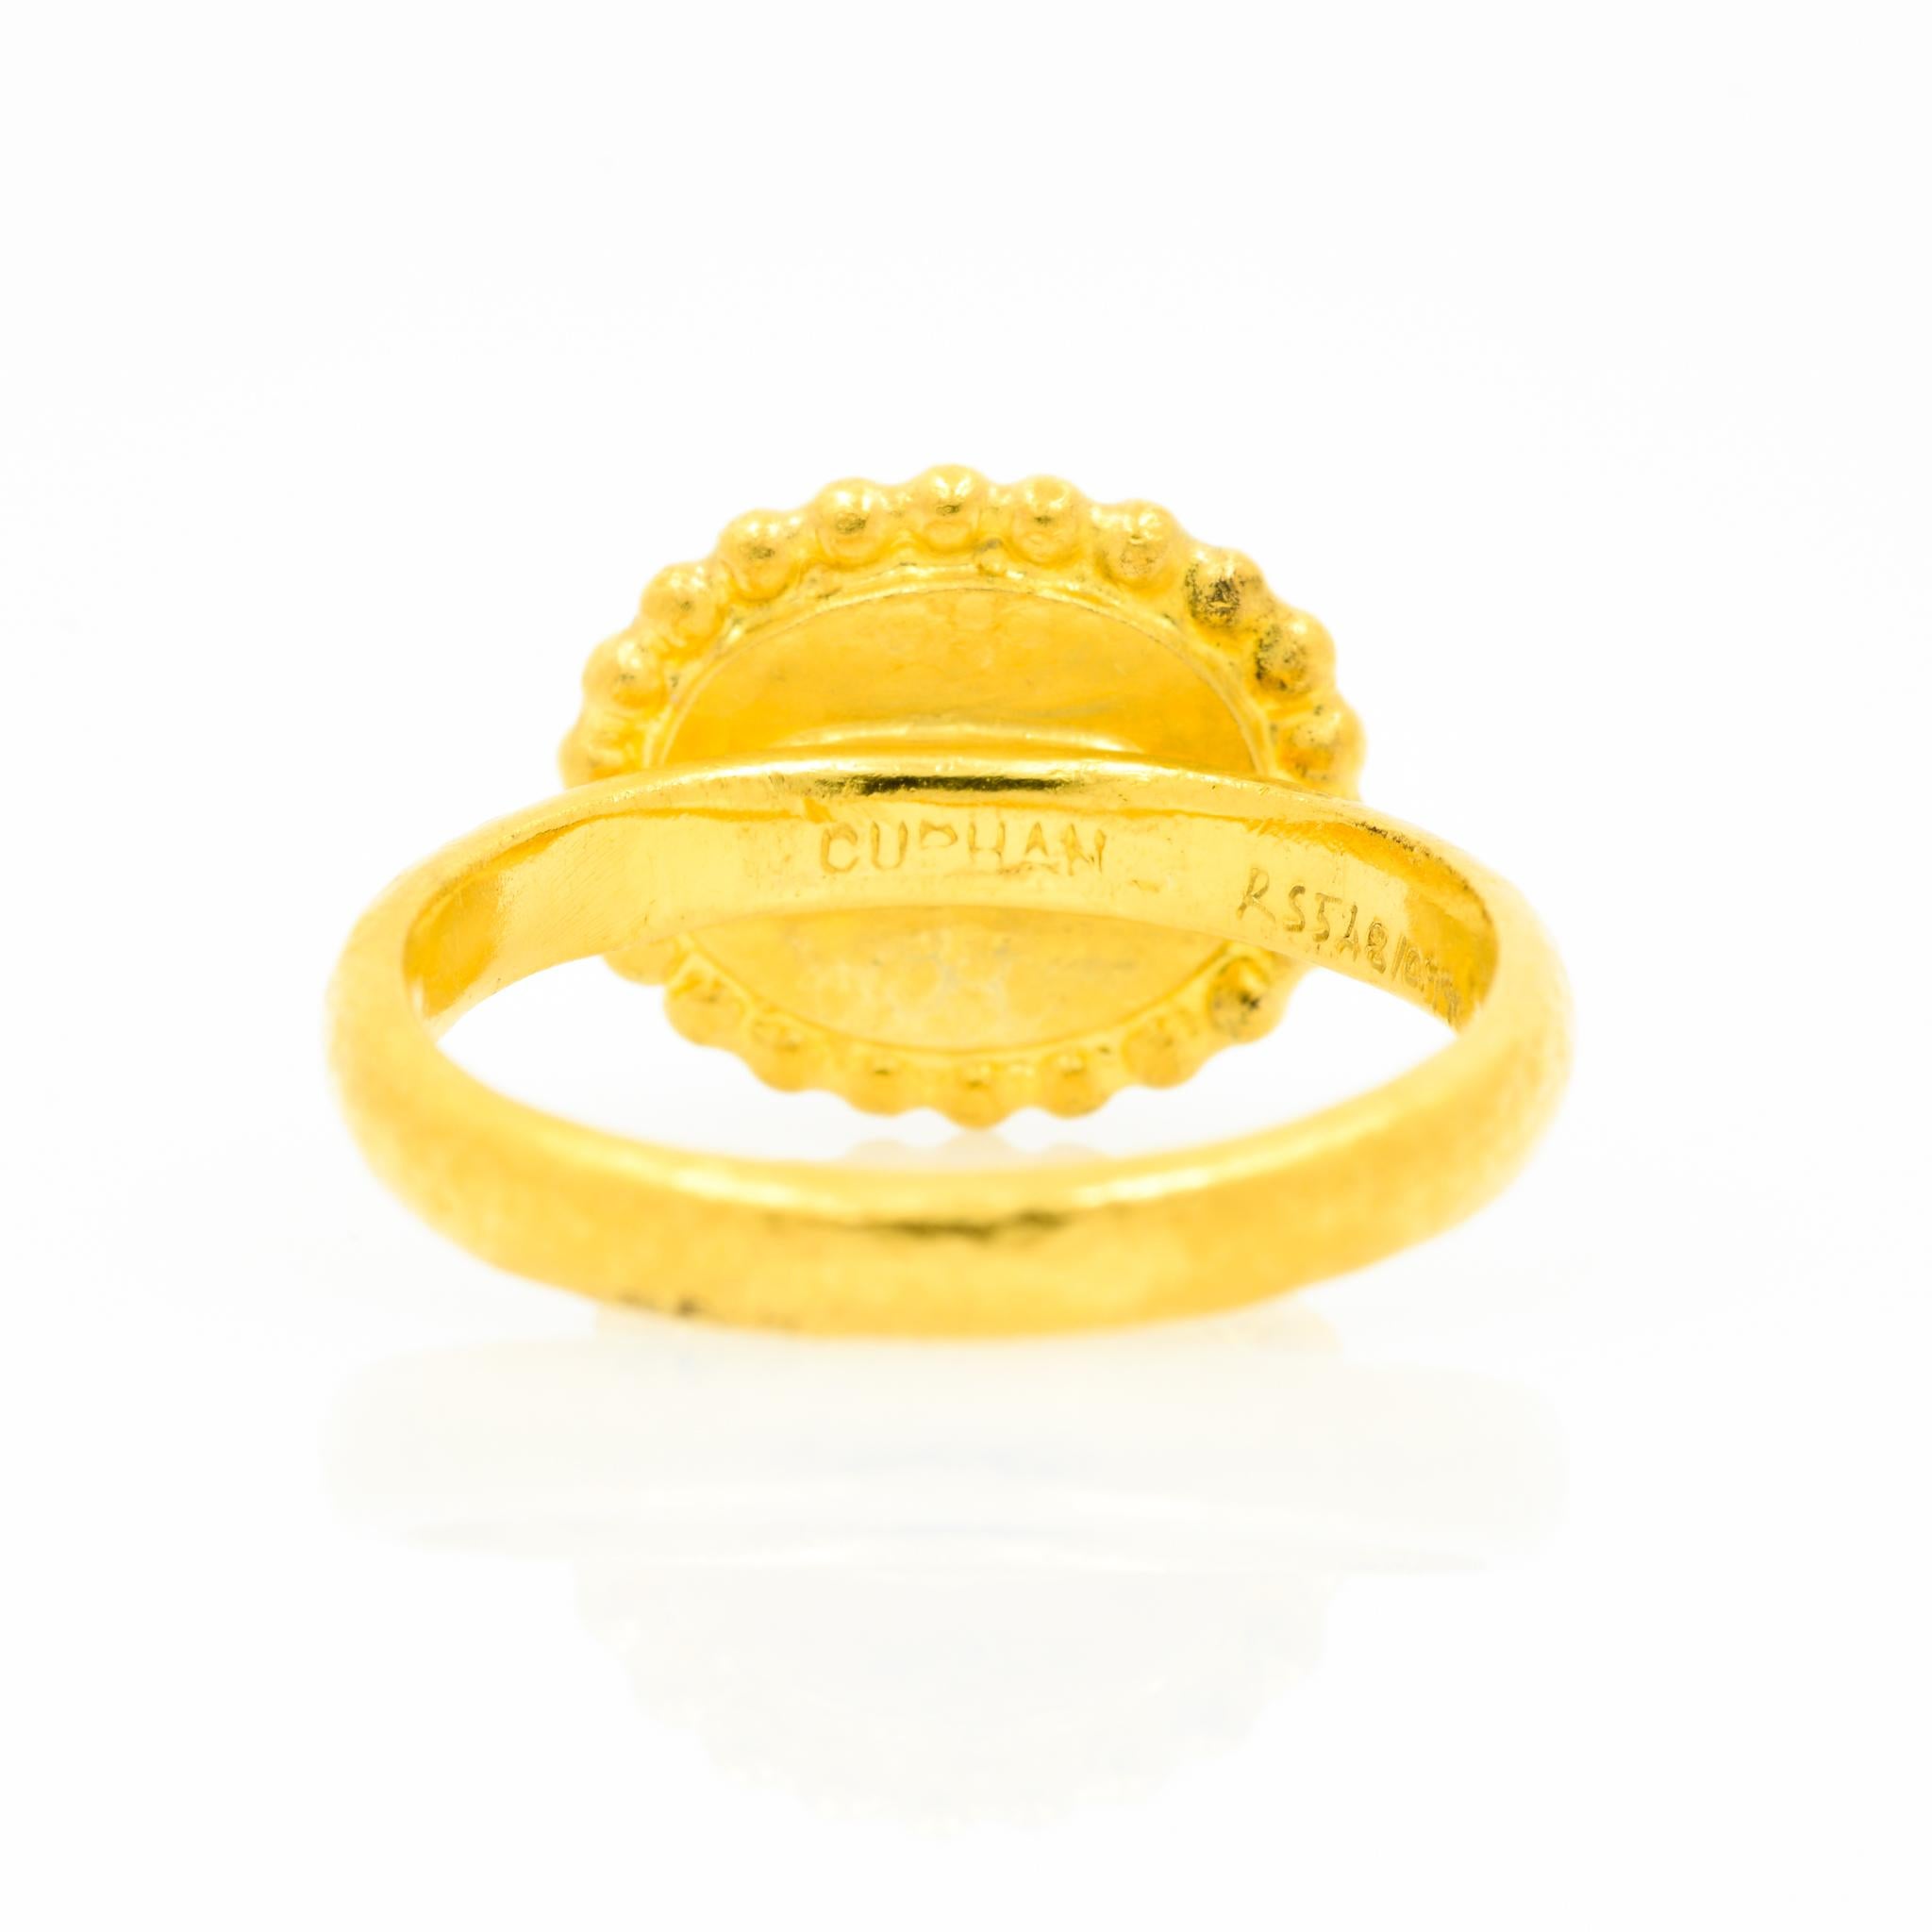 Gurhan 24 Karat Gold Turquoise Ring 1